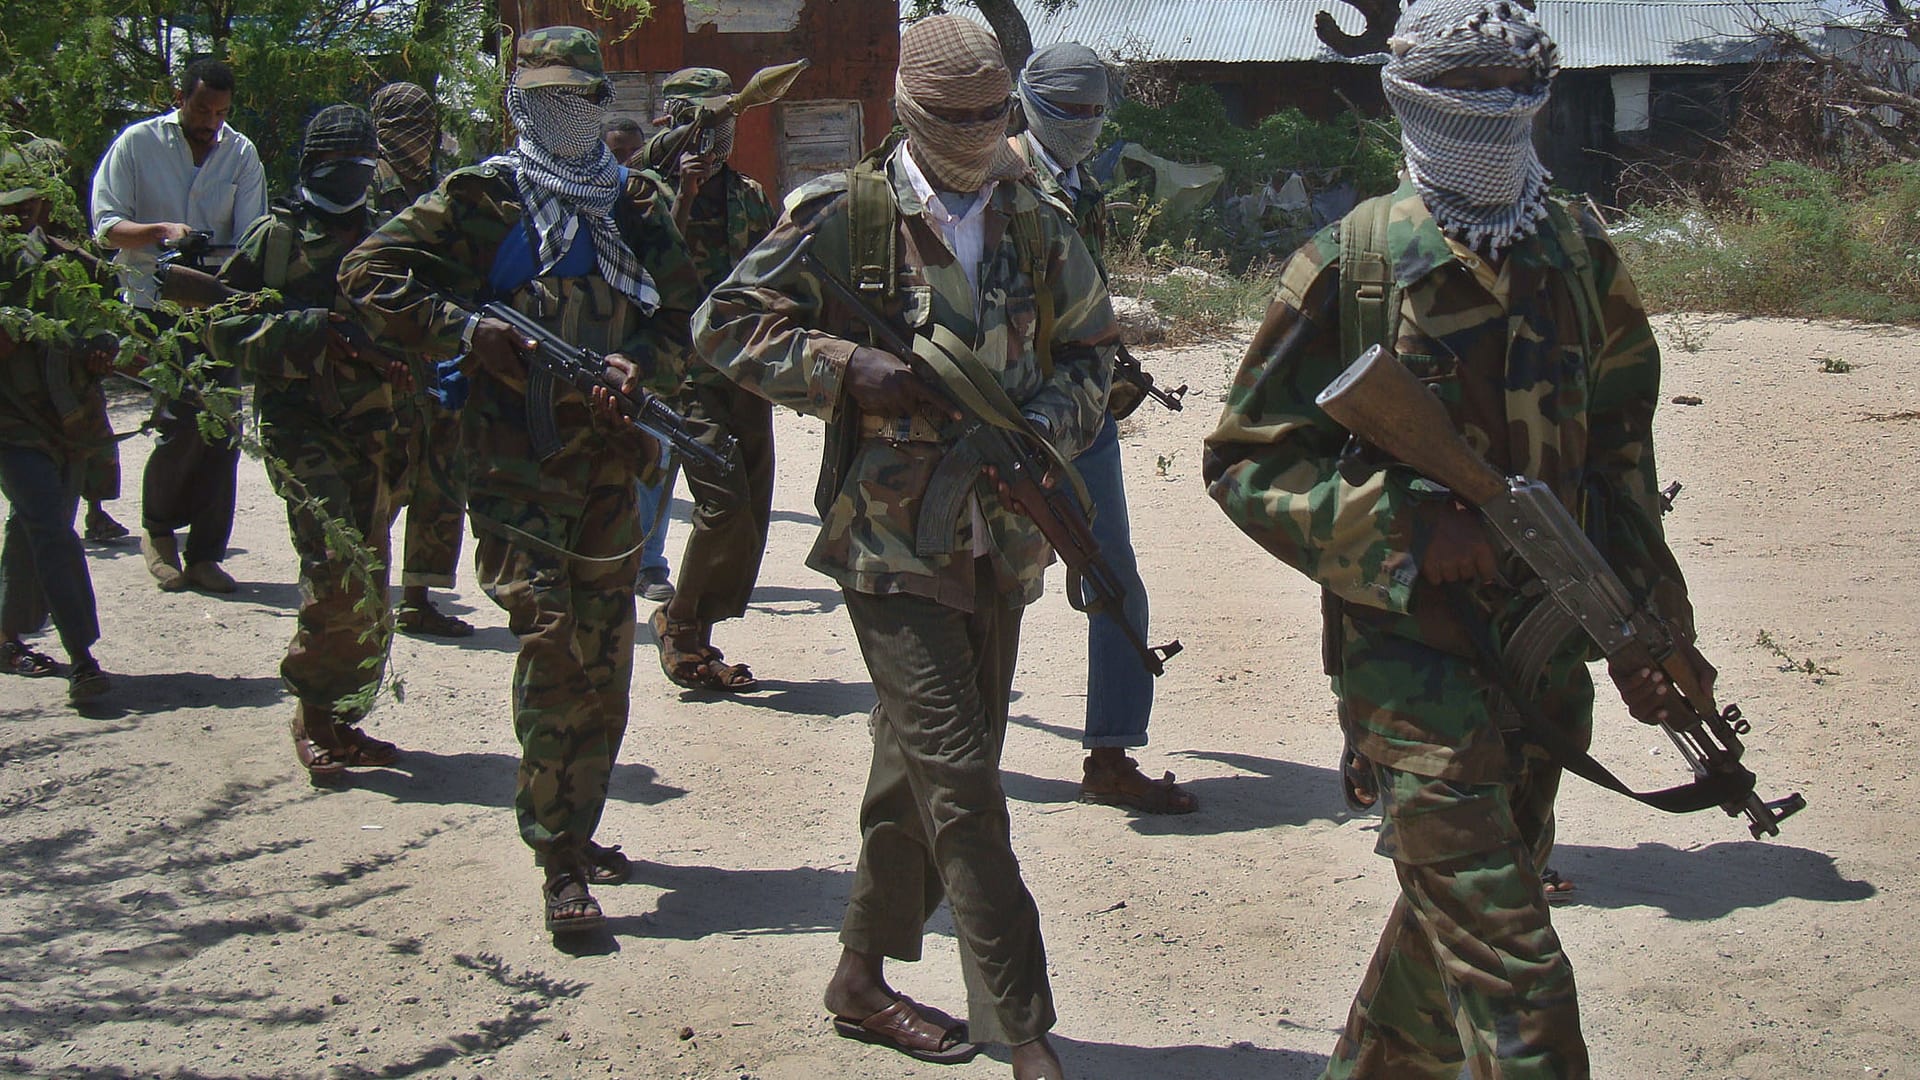 بعد مقتل أحد عناصره في مايو بالصومال.. الجيش الأمريكي يشن غارة جوية ضد حركة "الشباب"